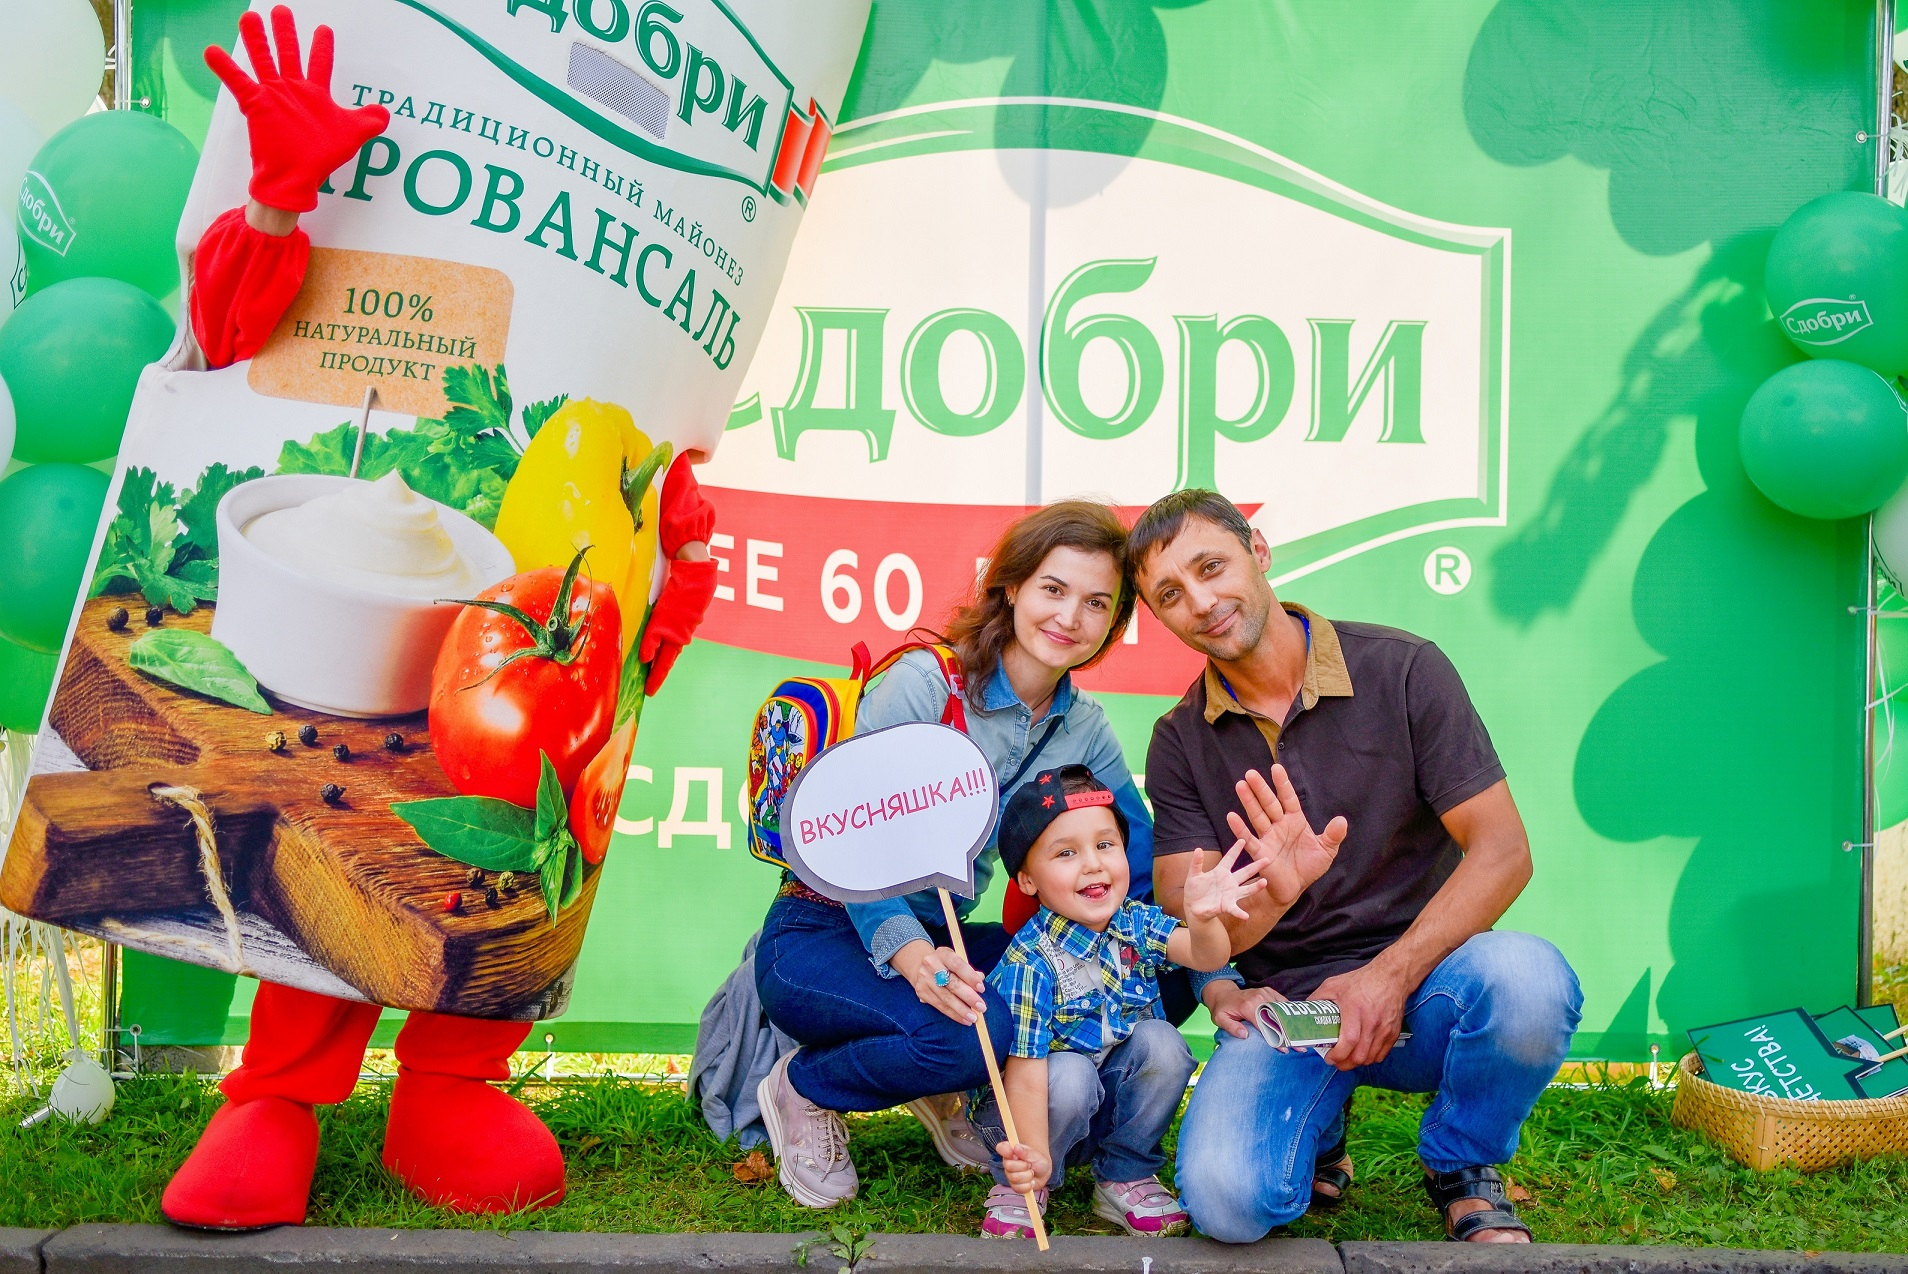 В Чебоксарах состоялся фестиваль для всей семьи СдобриФест